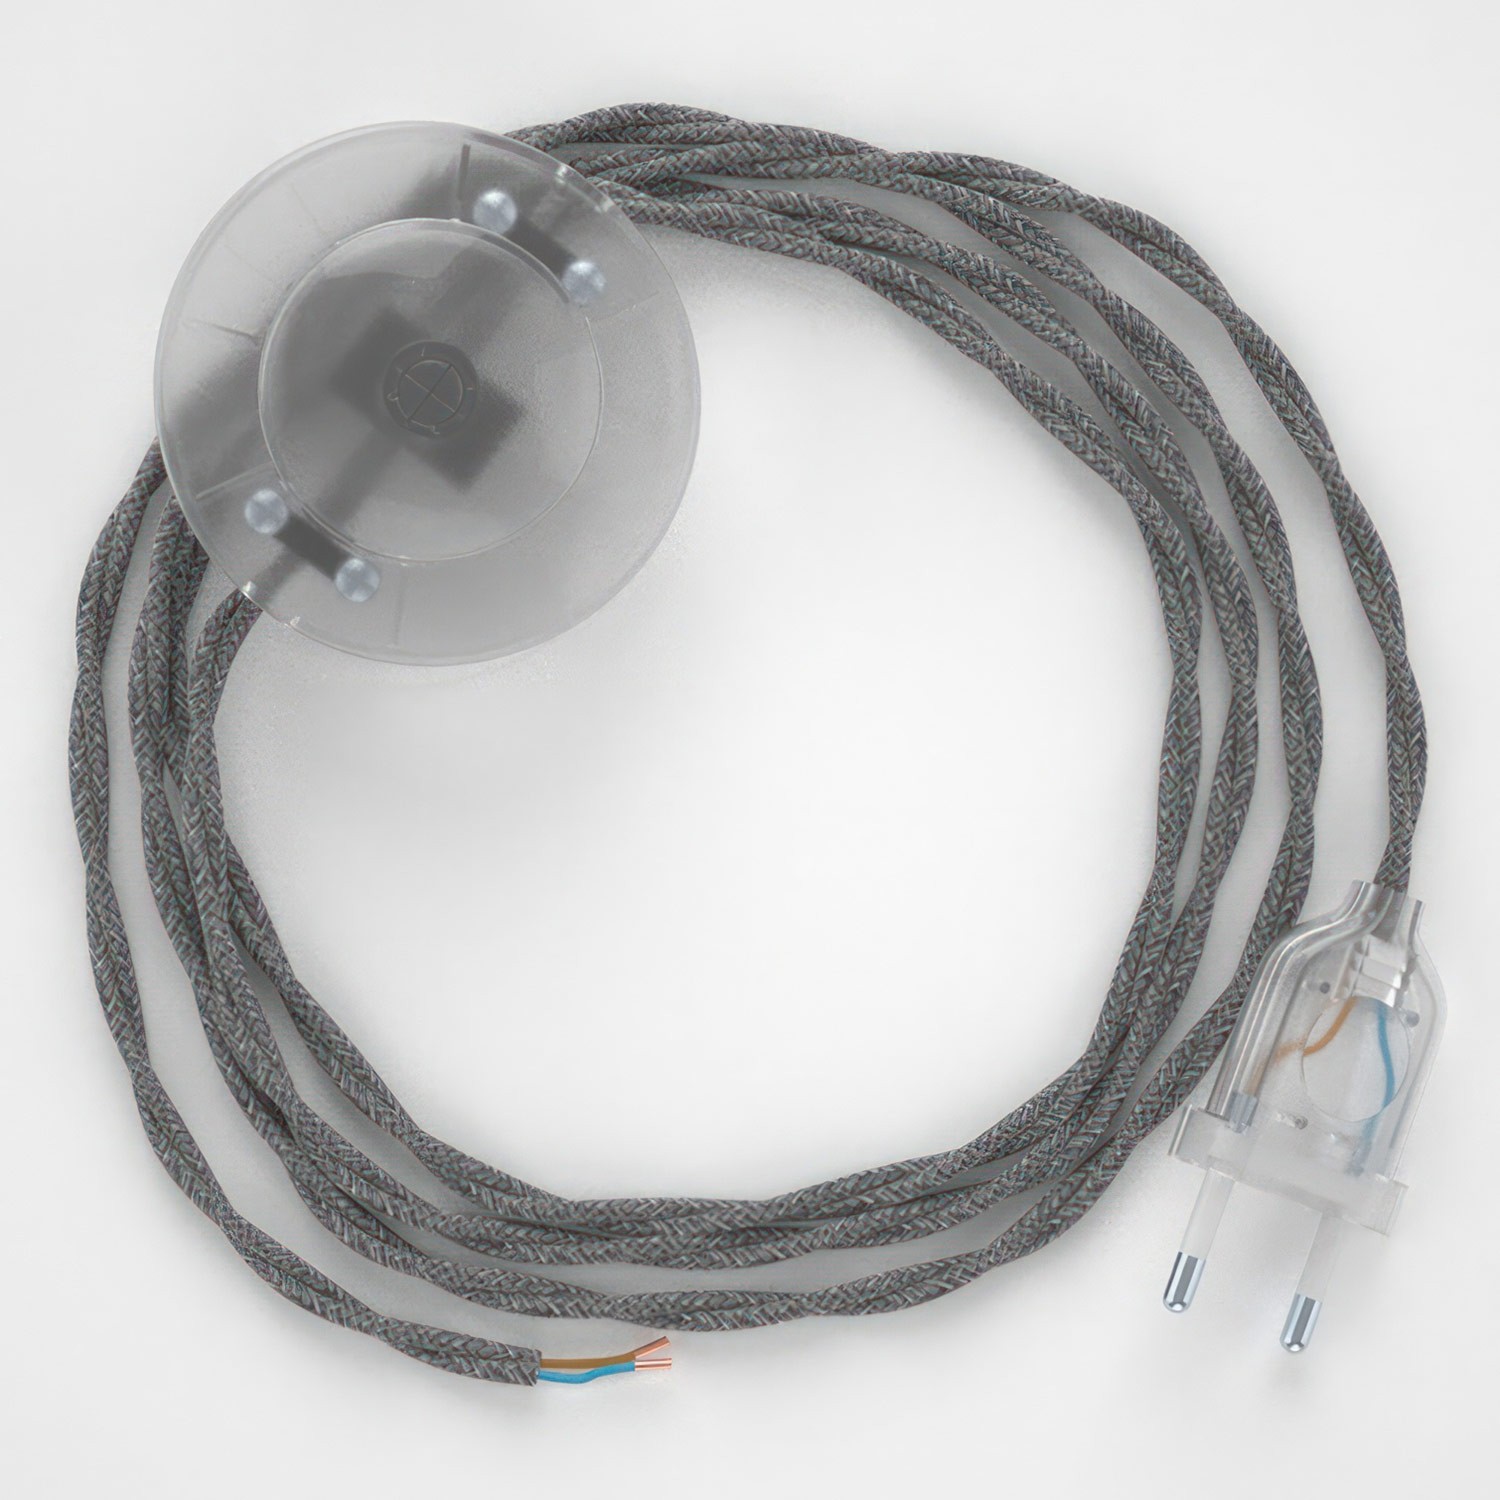 Cableado para lámpara de pie, cable TN02 Lino Natural Gris 3 m. Elige tu el color de la clavija y del interruptor!